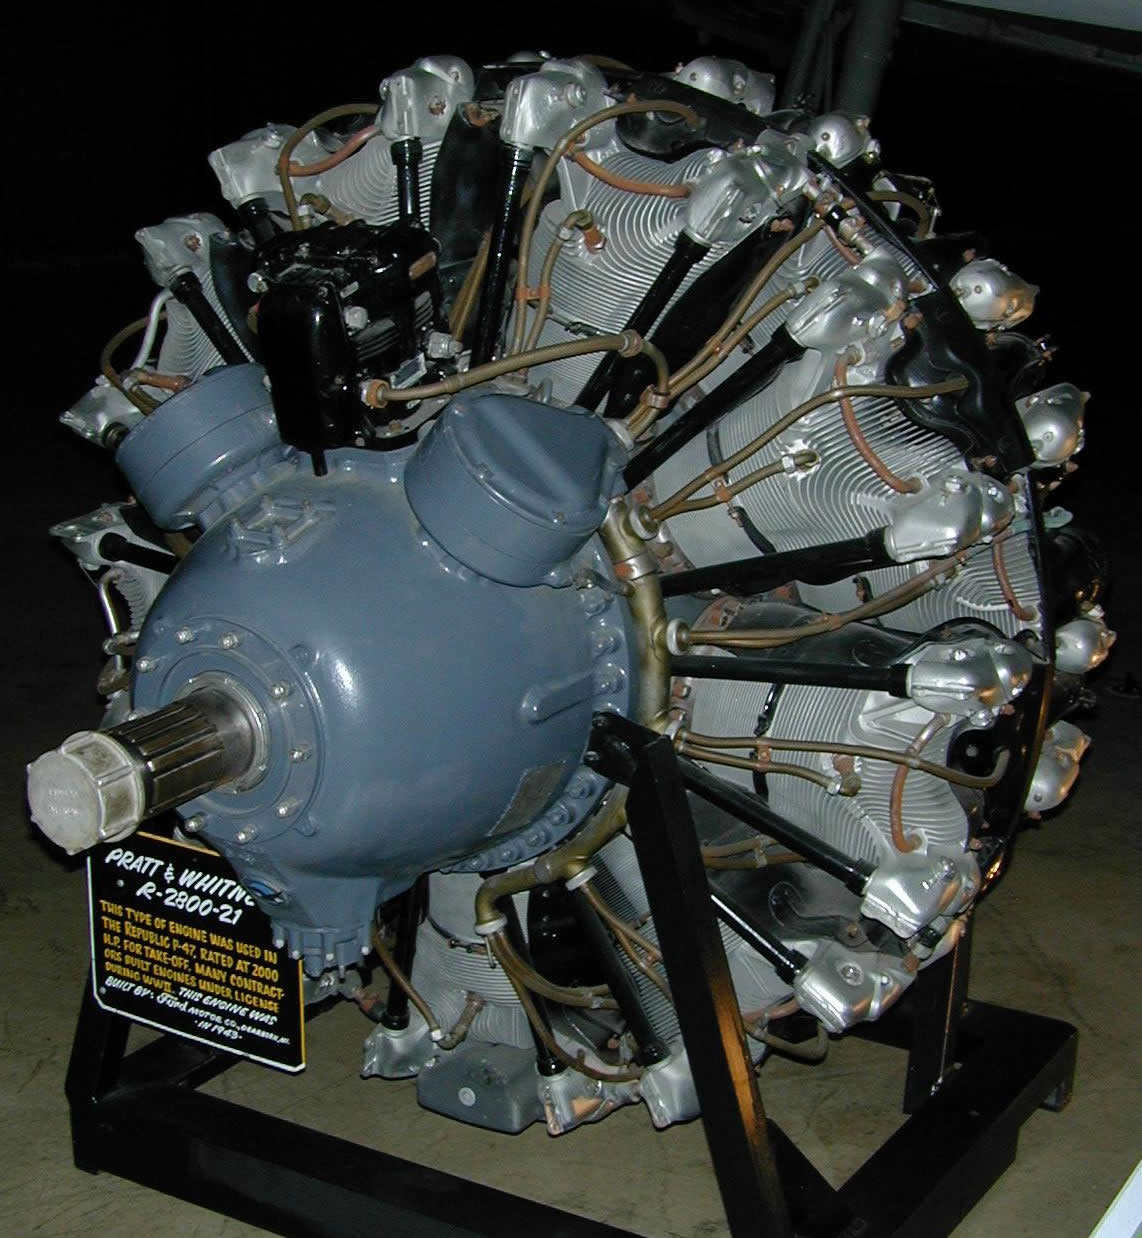 Prat & Whitney Engine